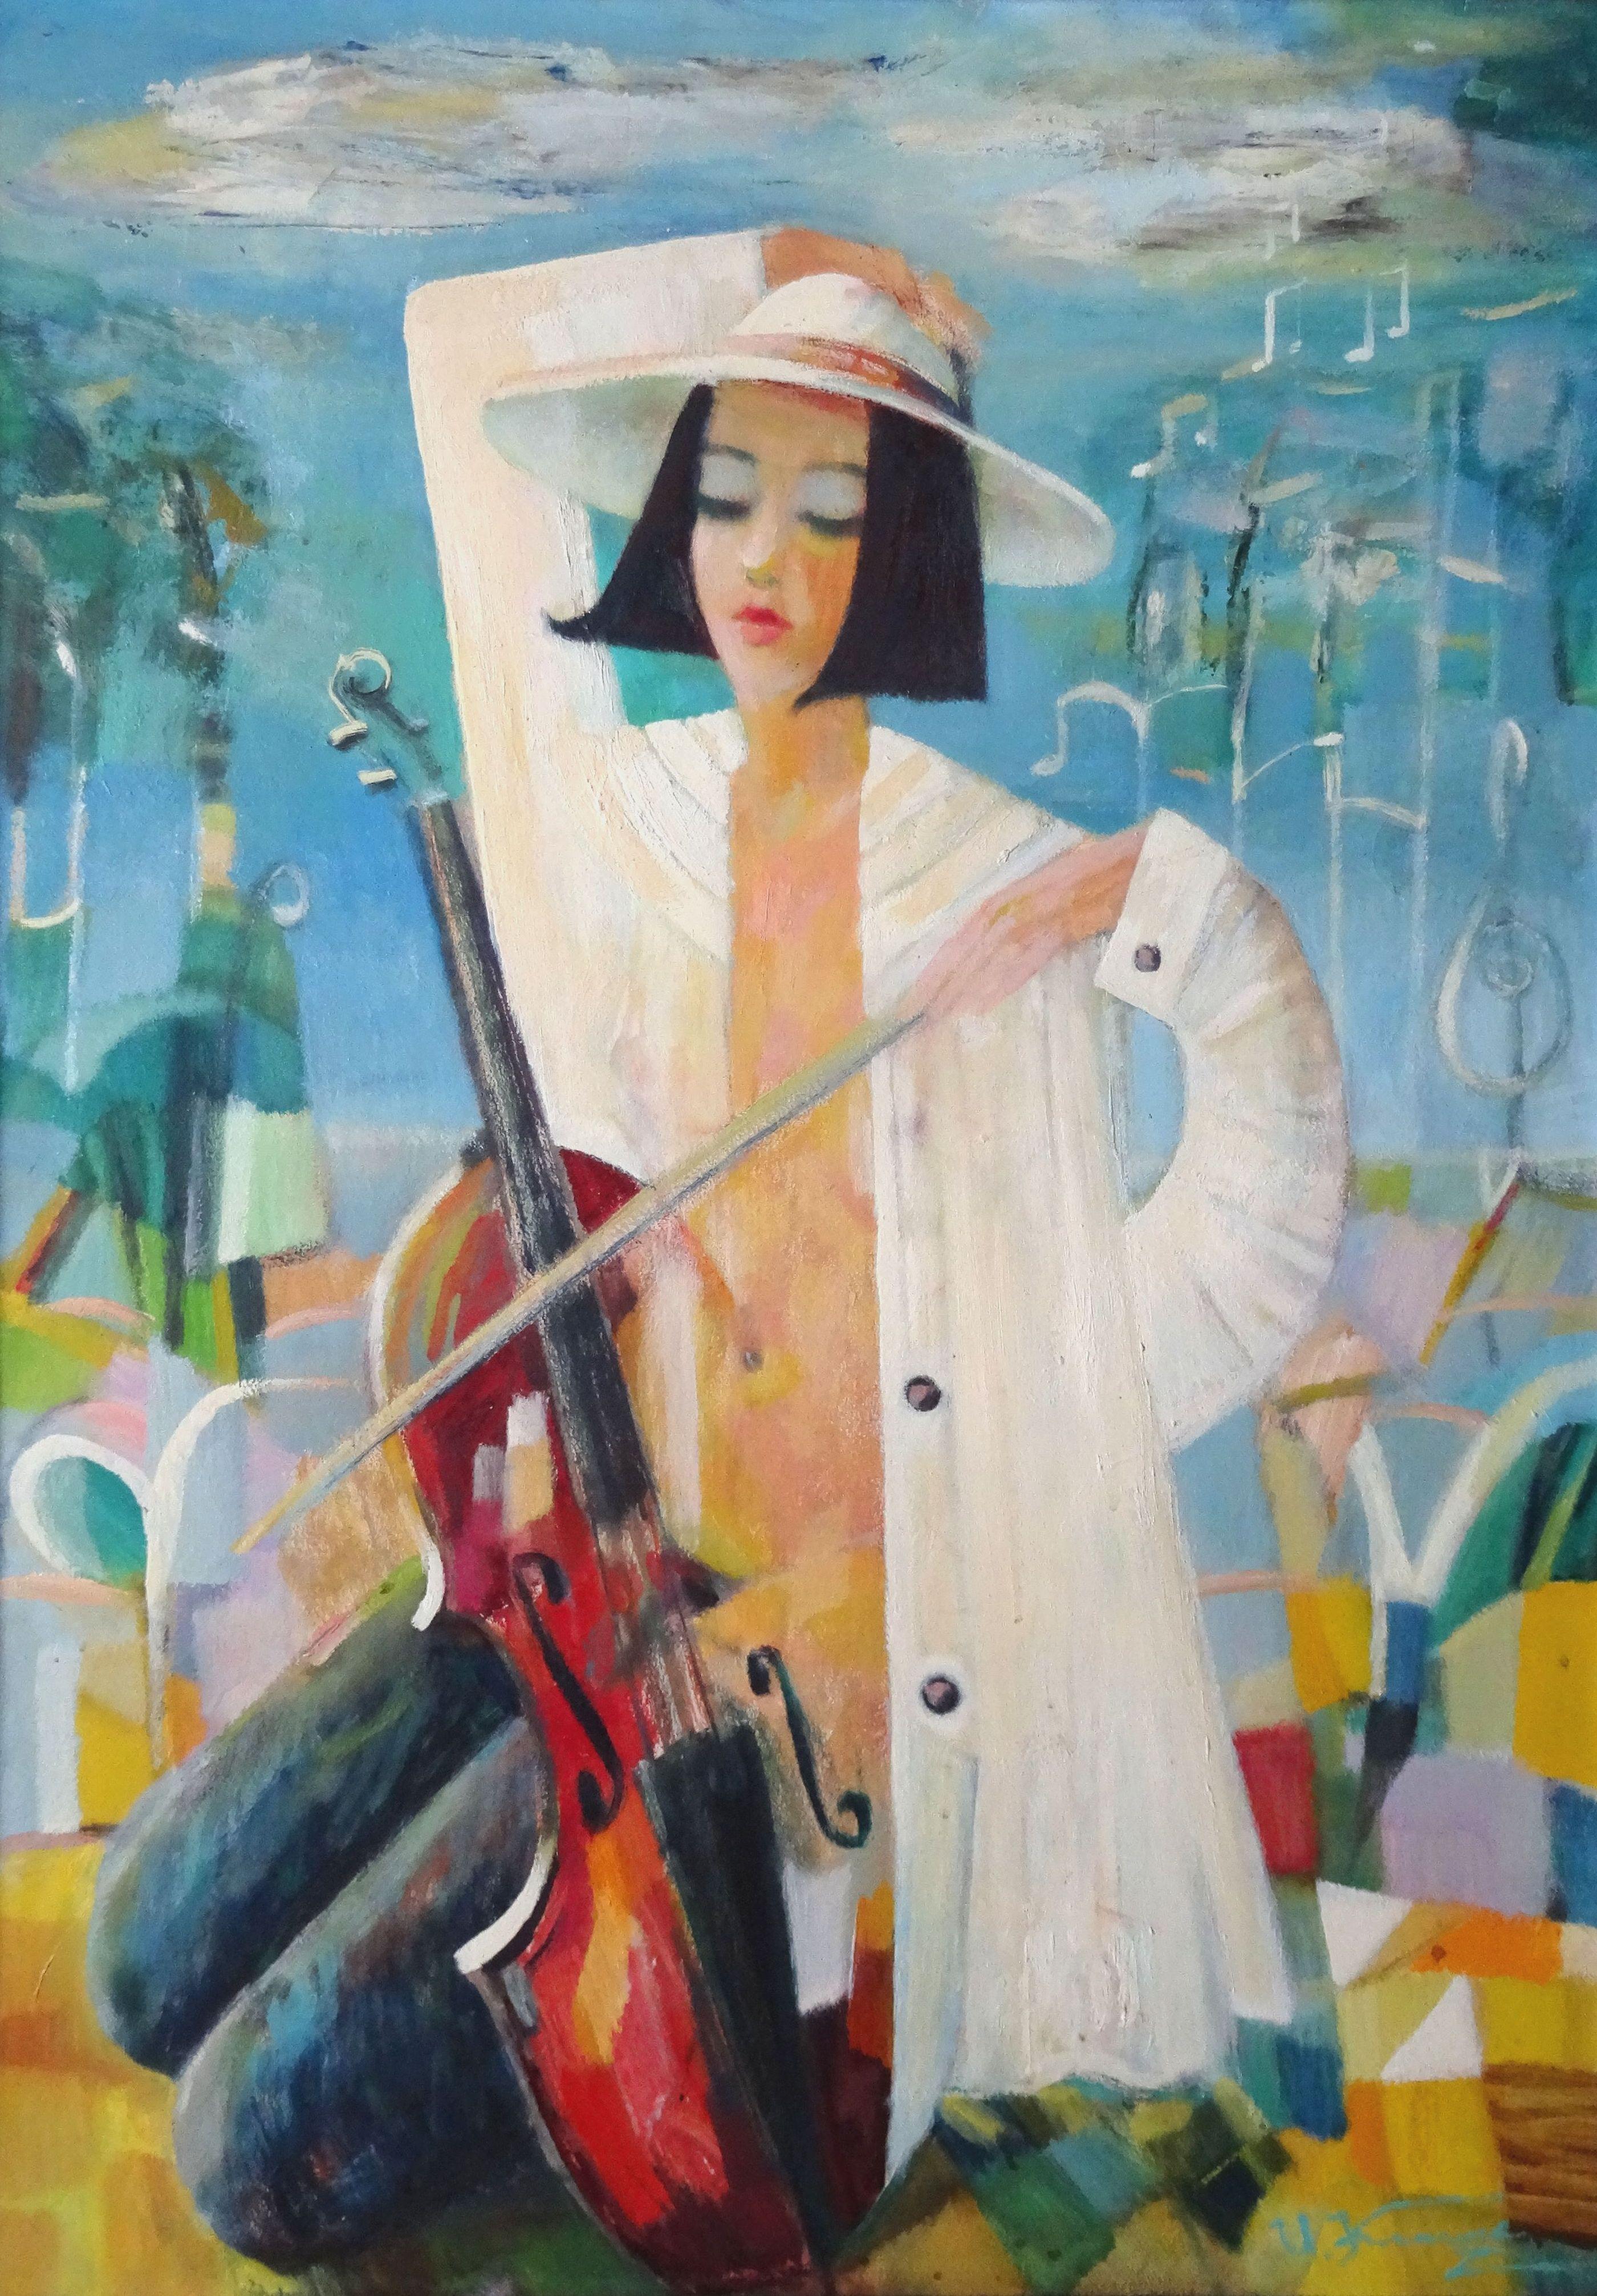 Uldis Krauze Figurative Painting - Musical mood. 2001. Oil on cardboard, 90x64 cm